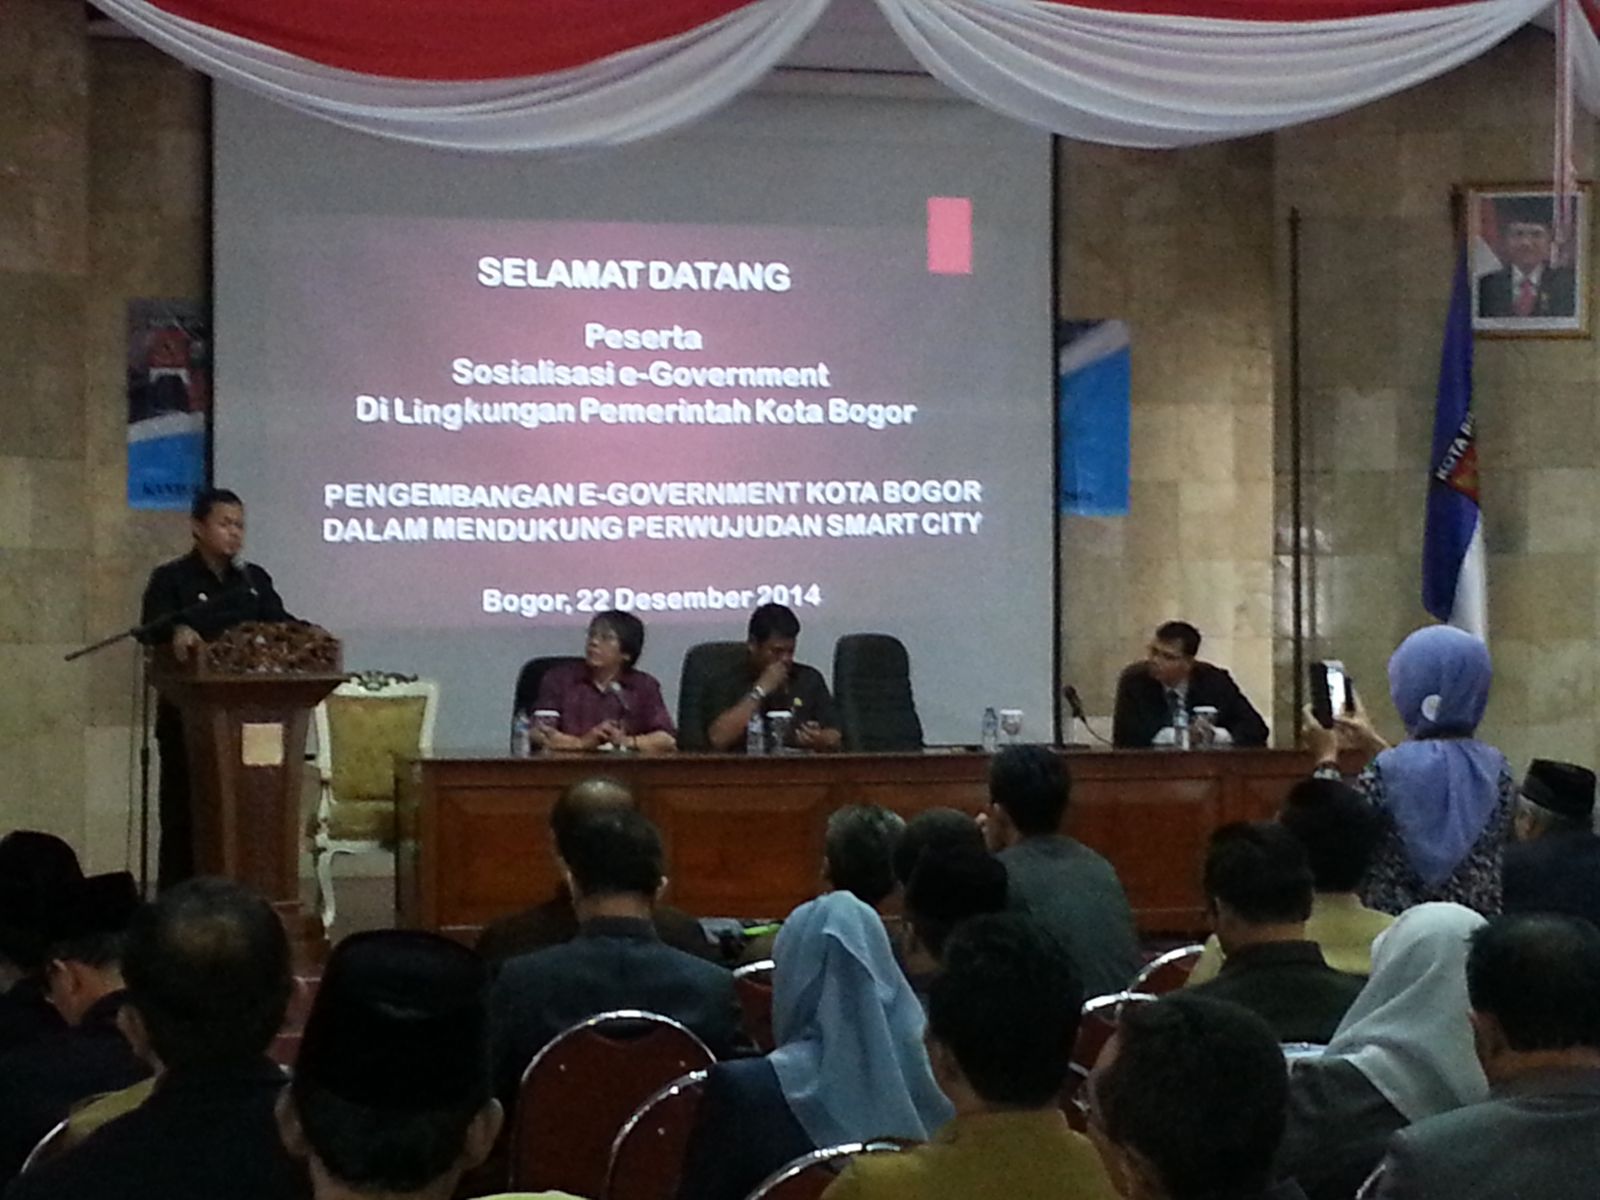 Pengembangan eGovernment Kota Bogor Dalam Mendukung Perwujudan Smart City